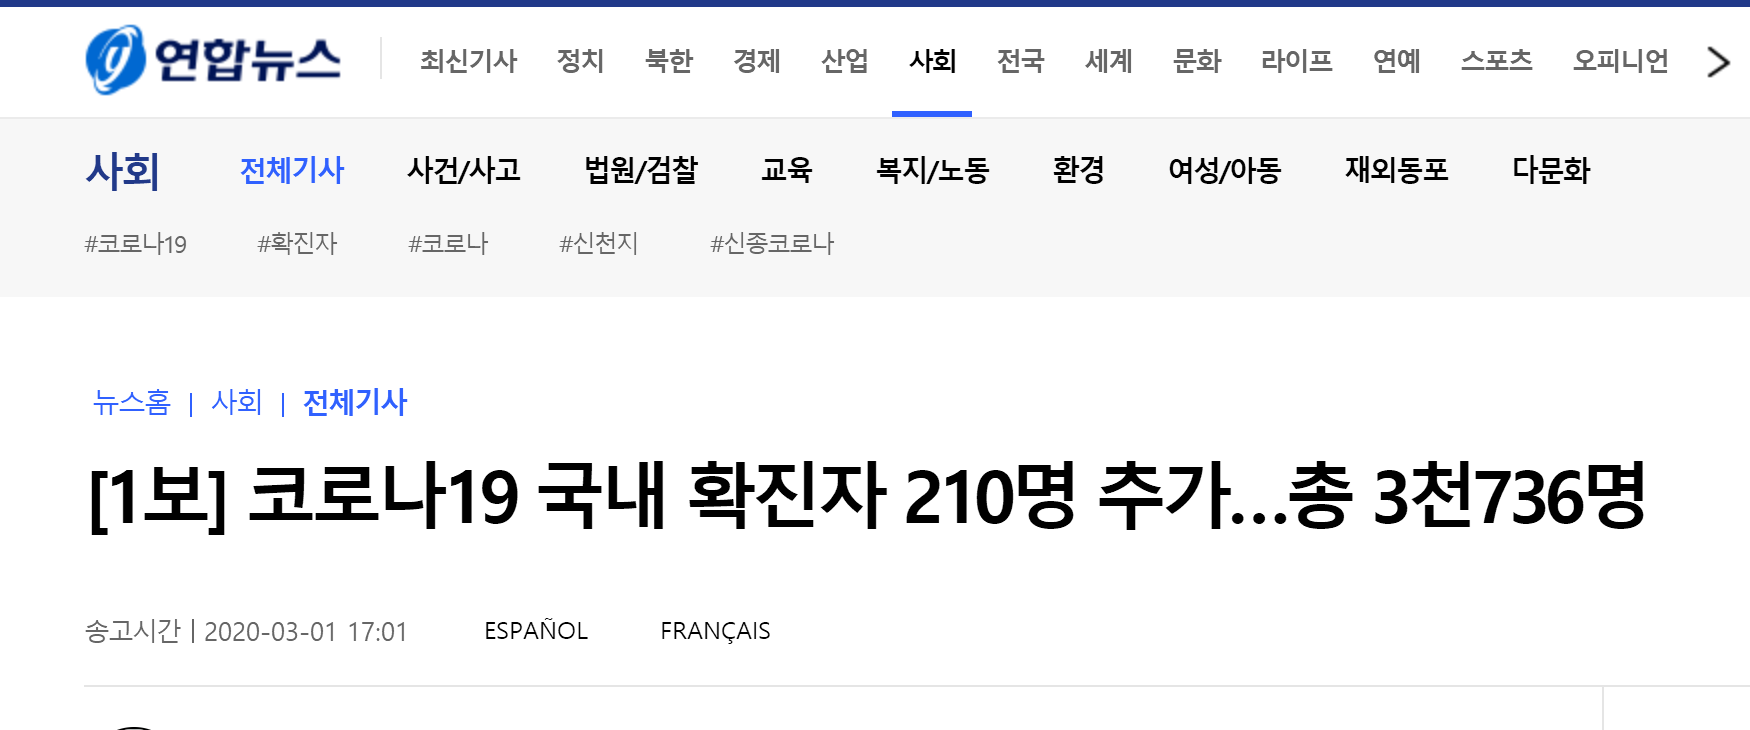 韩国一天增加新冠肺炎确诊病例586例 累计3736例